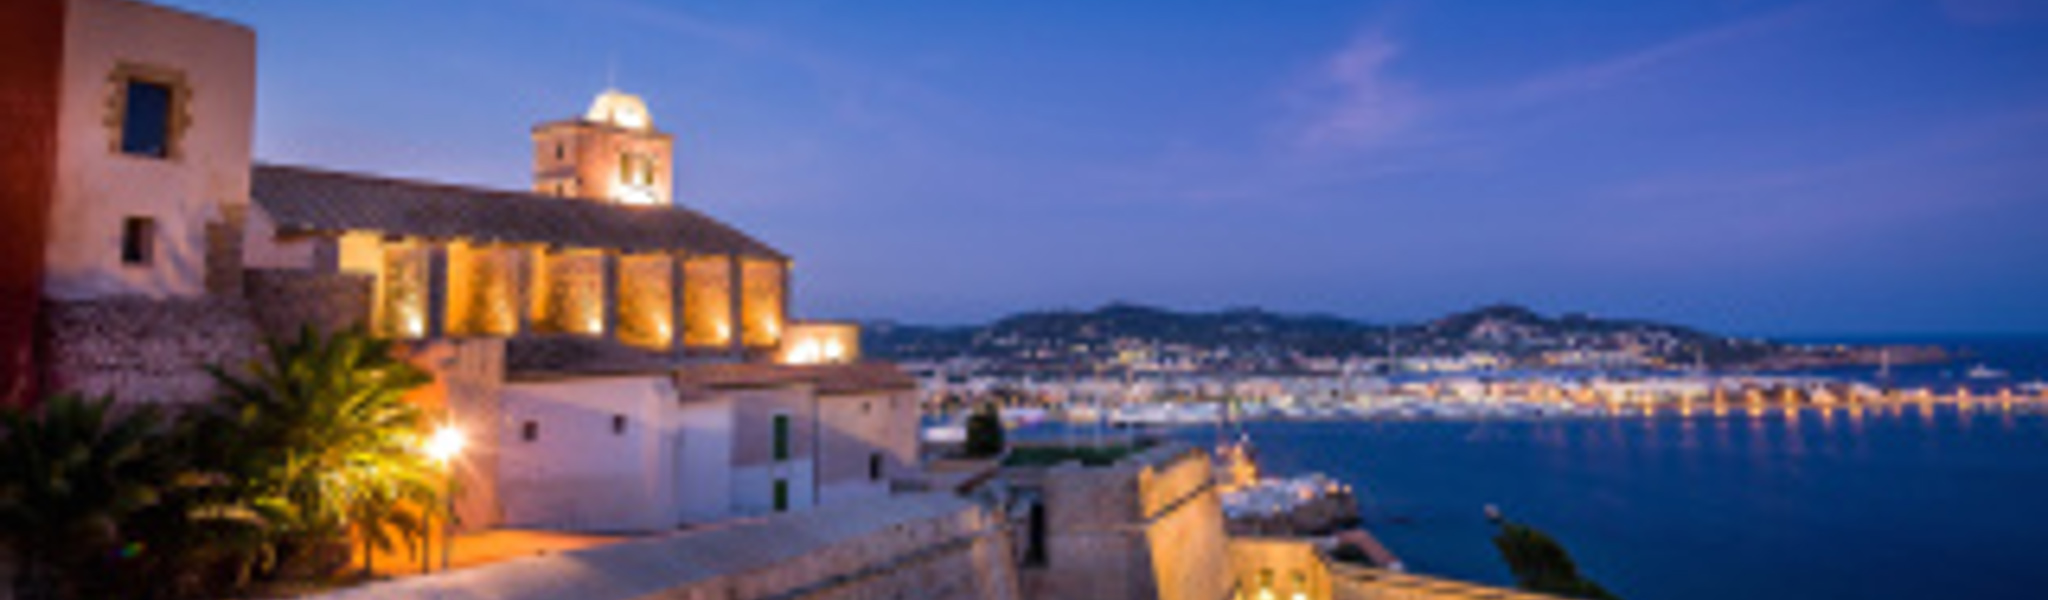 10 motivi per cui amiamo Ibiza 